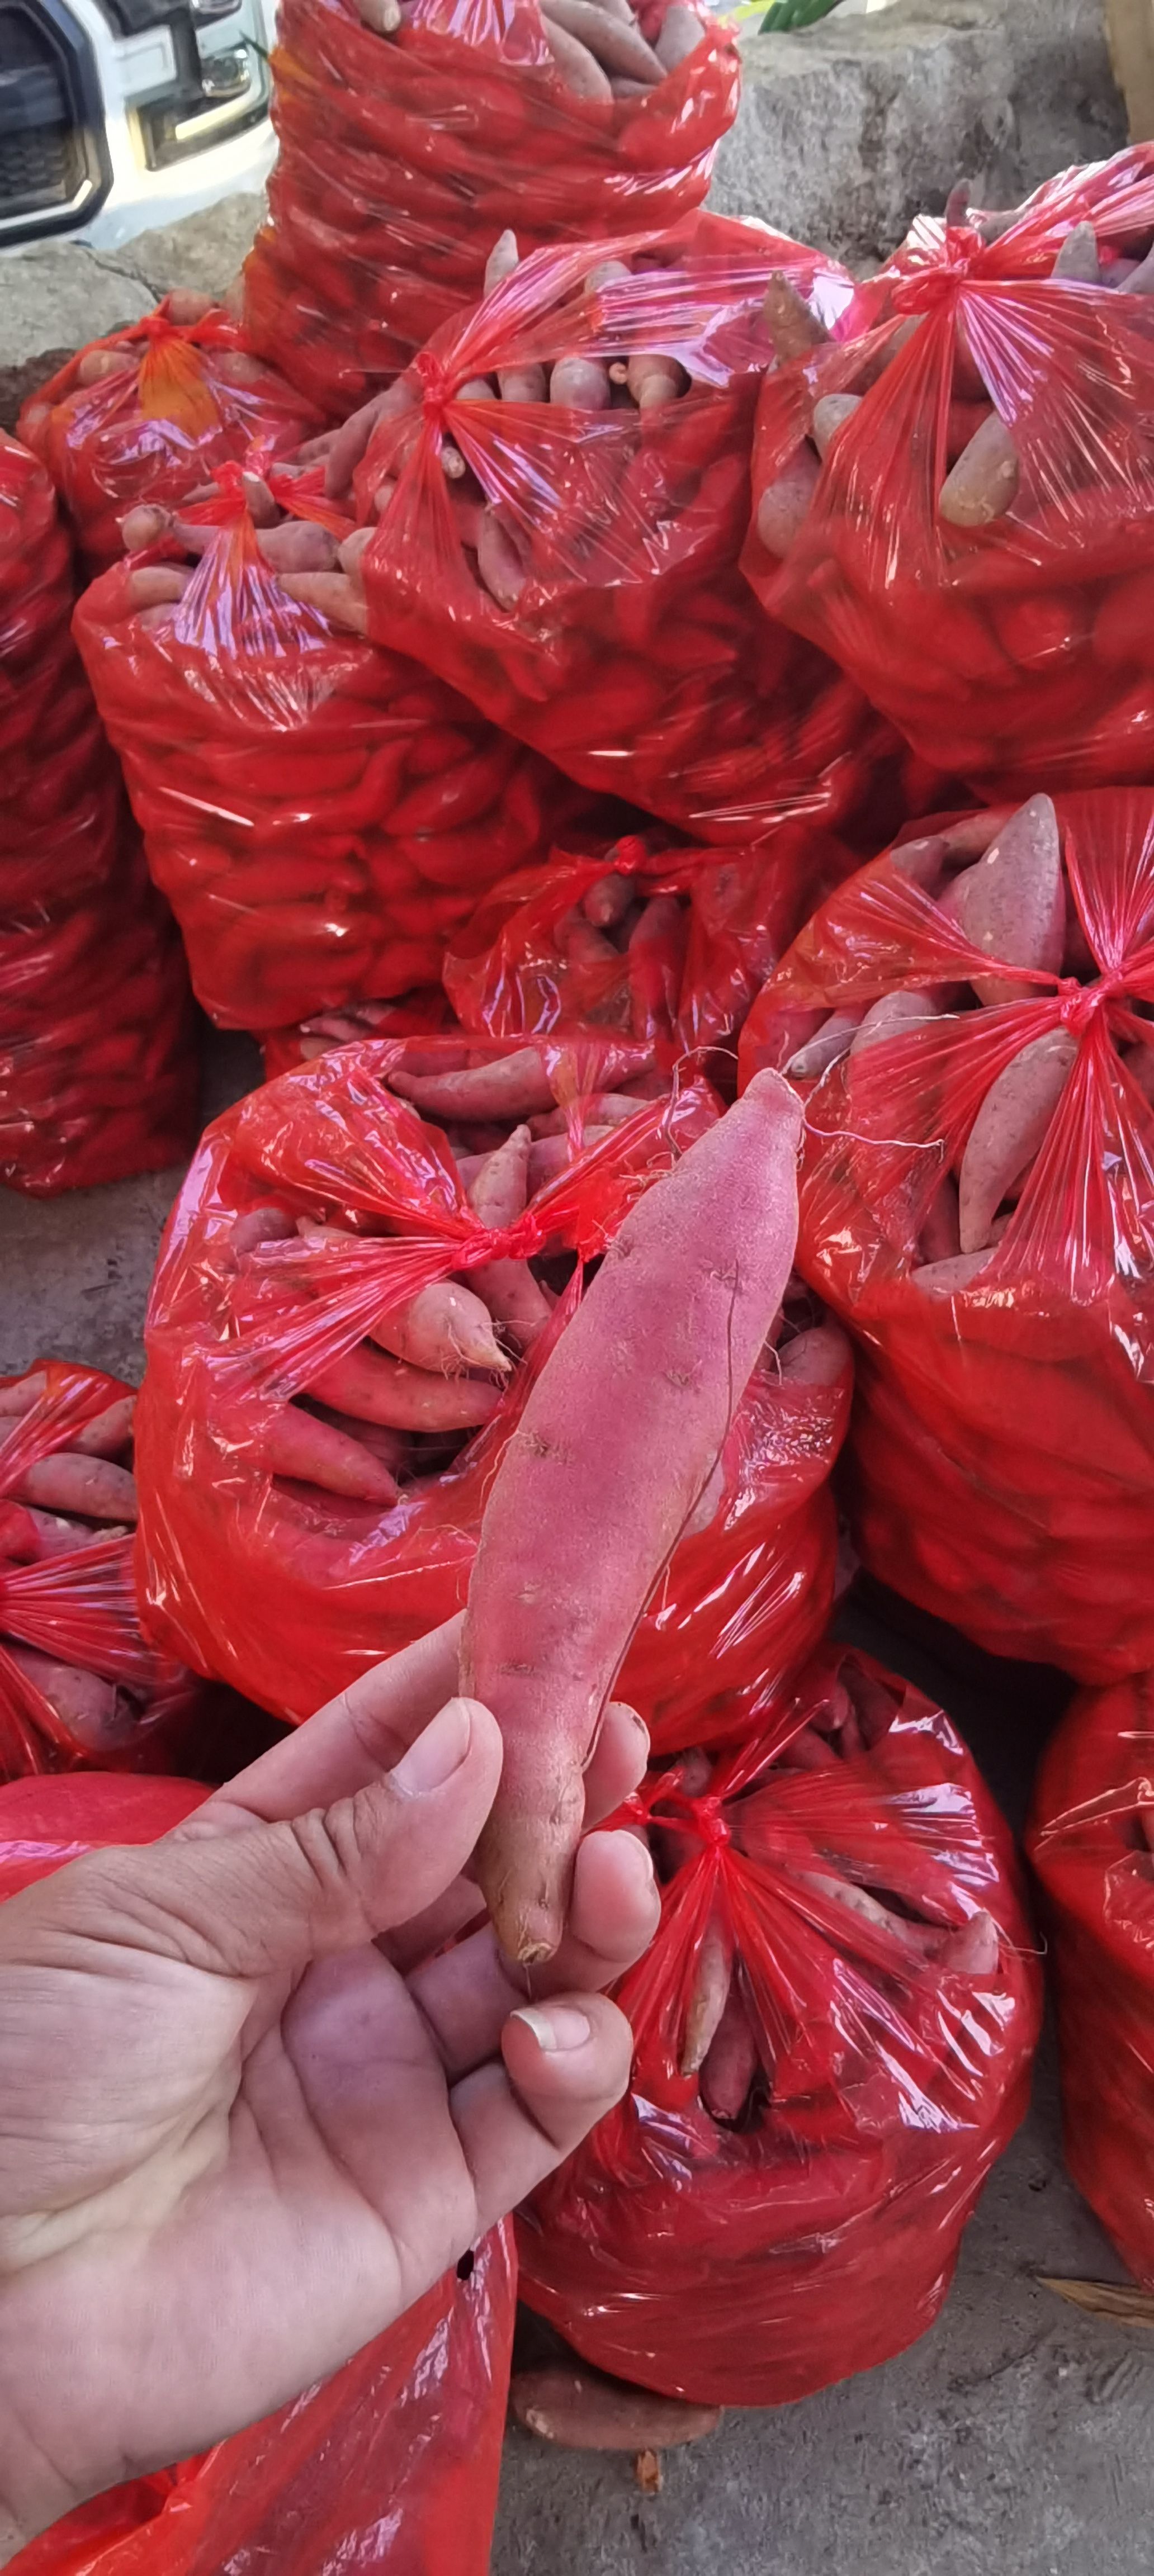 漳浦县福建漳浦六鳌蜜薯产地直销大量上市了